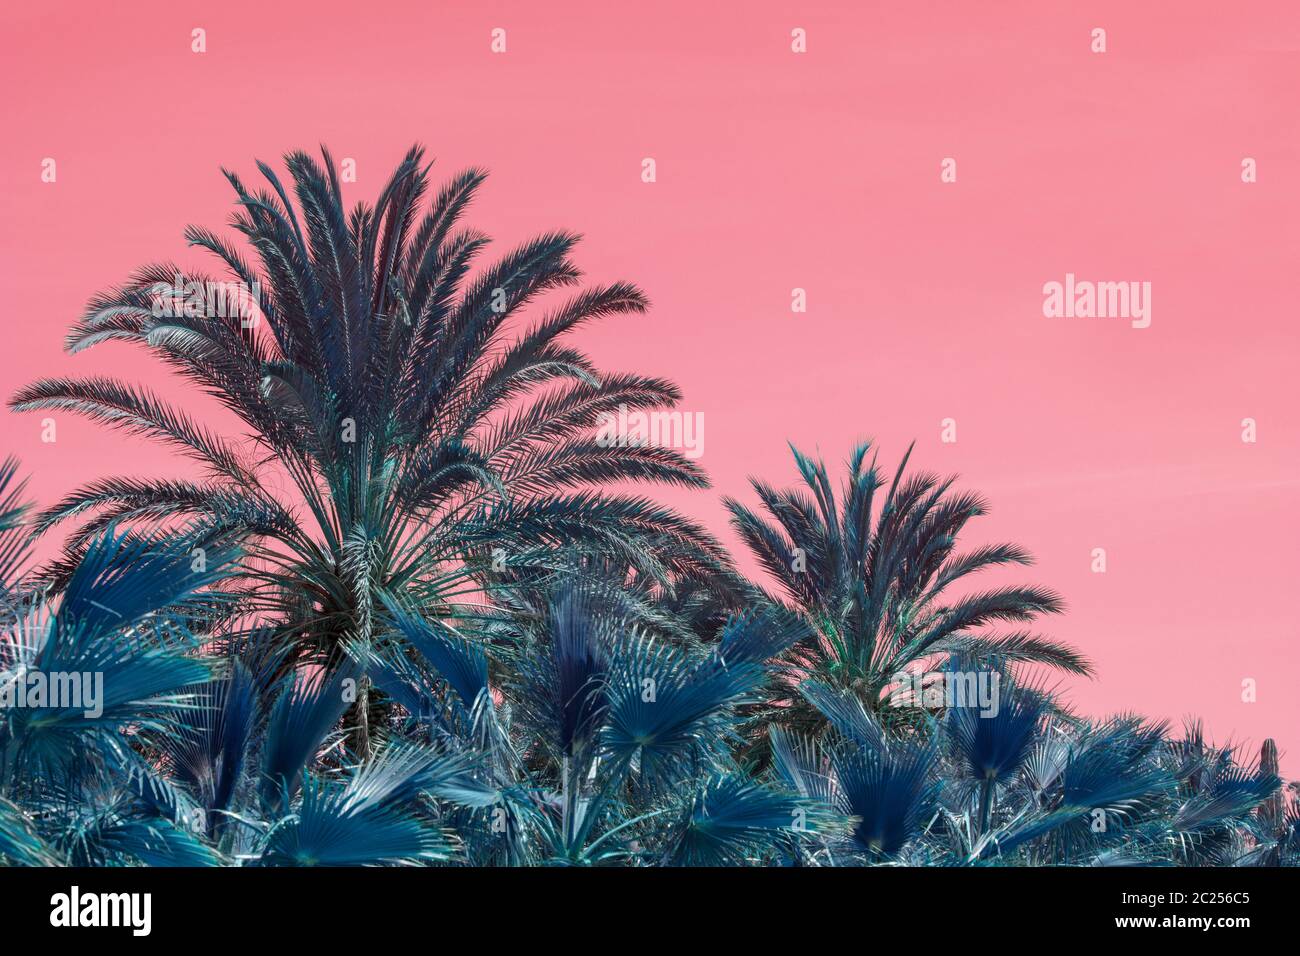 Palmiers abstraits surréalistes contre les cieux roses Banque D'Images